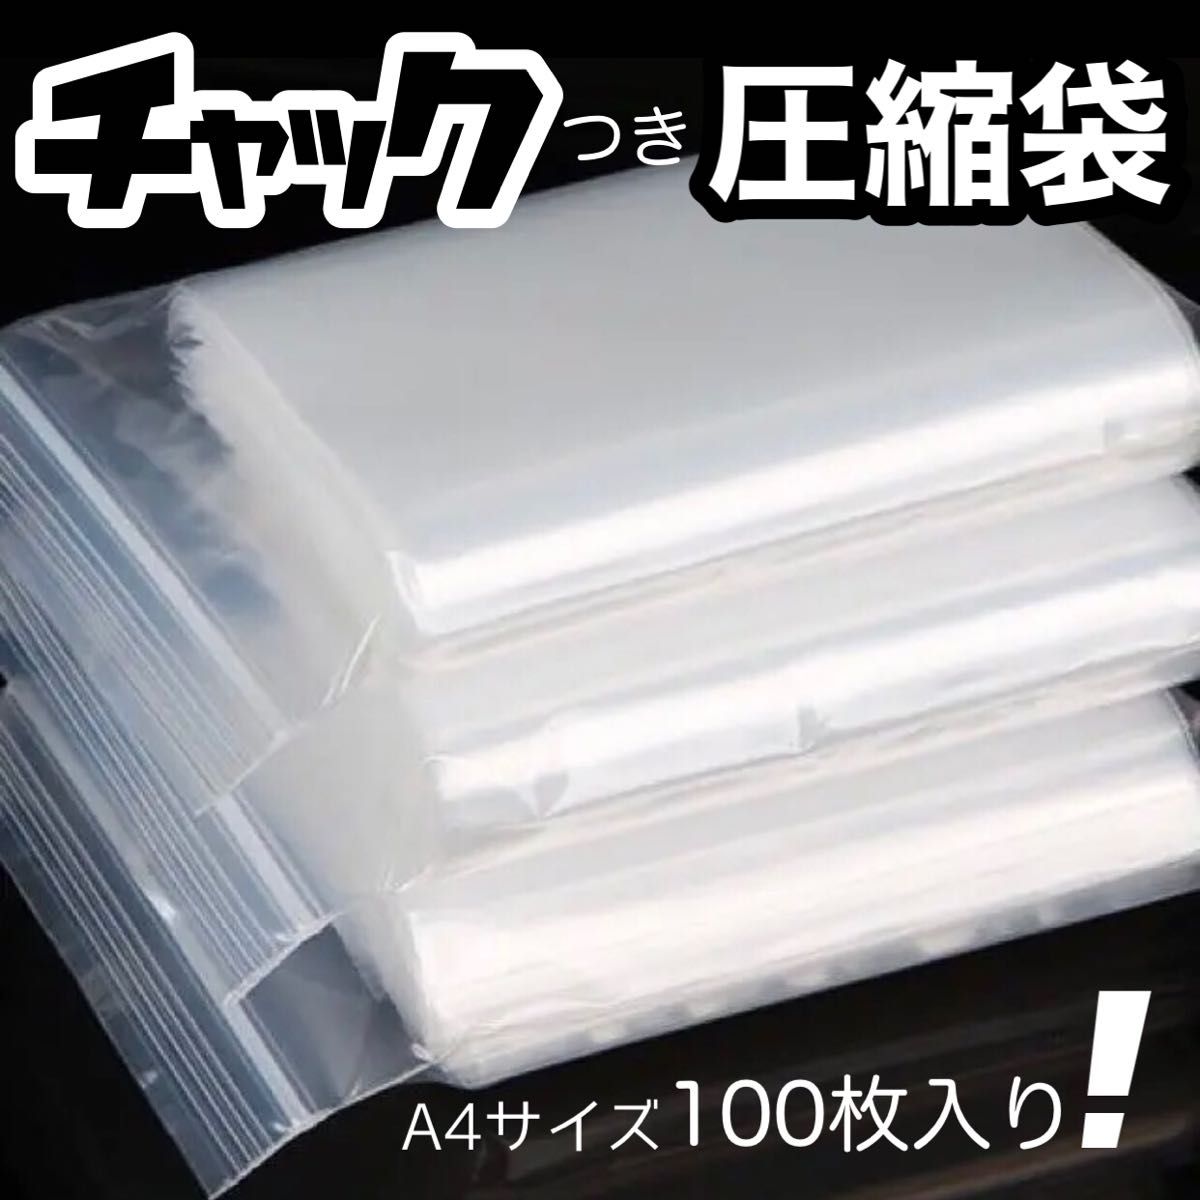 チャック付きポリ袋 ジッパー式 100枚入り A4 圧縮袋 梱包資材 透明